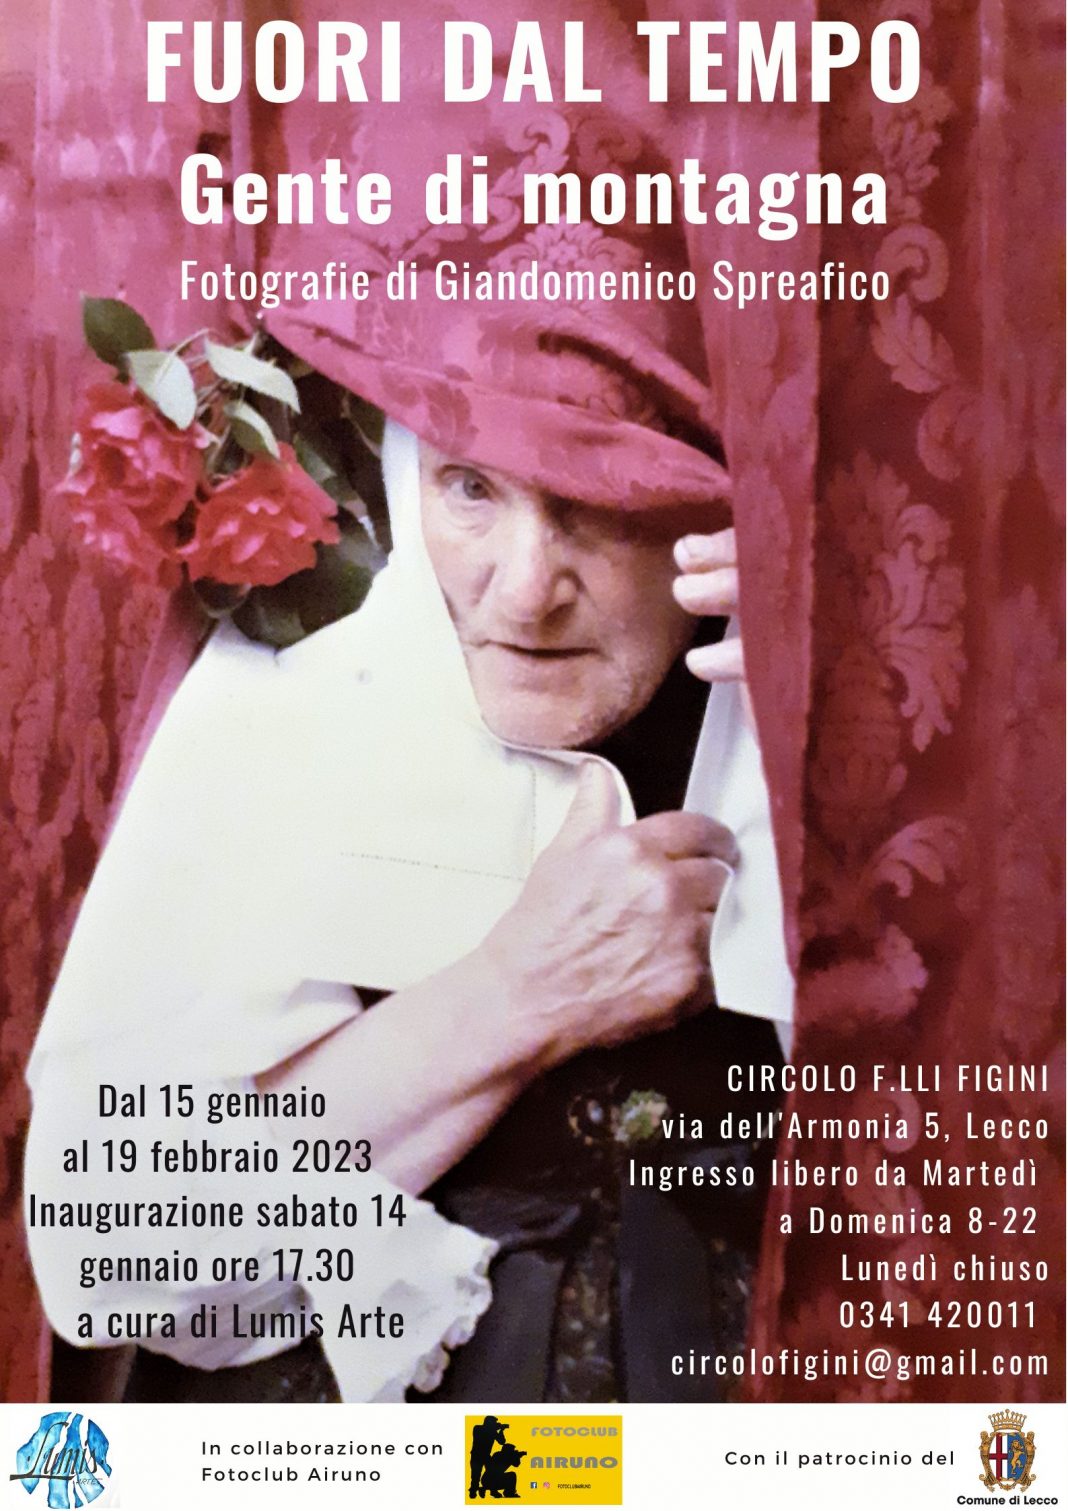 Giandomenico Spreafico – Gente di montagnahttps://www.exibart.com/repository/media/formidable/11/img/743/Fuori-dal-tempo-1-1068x1511.jpg